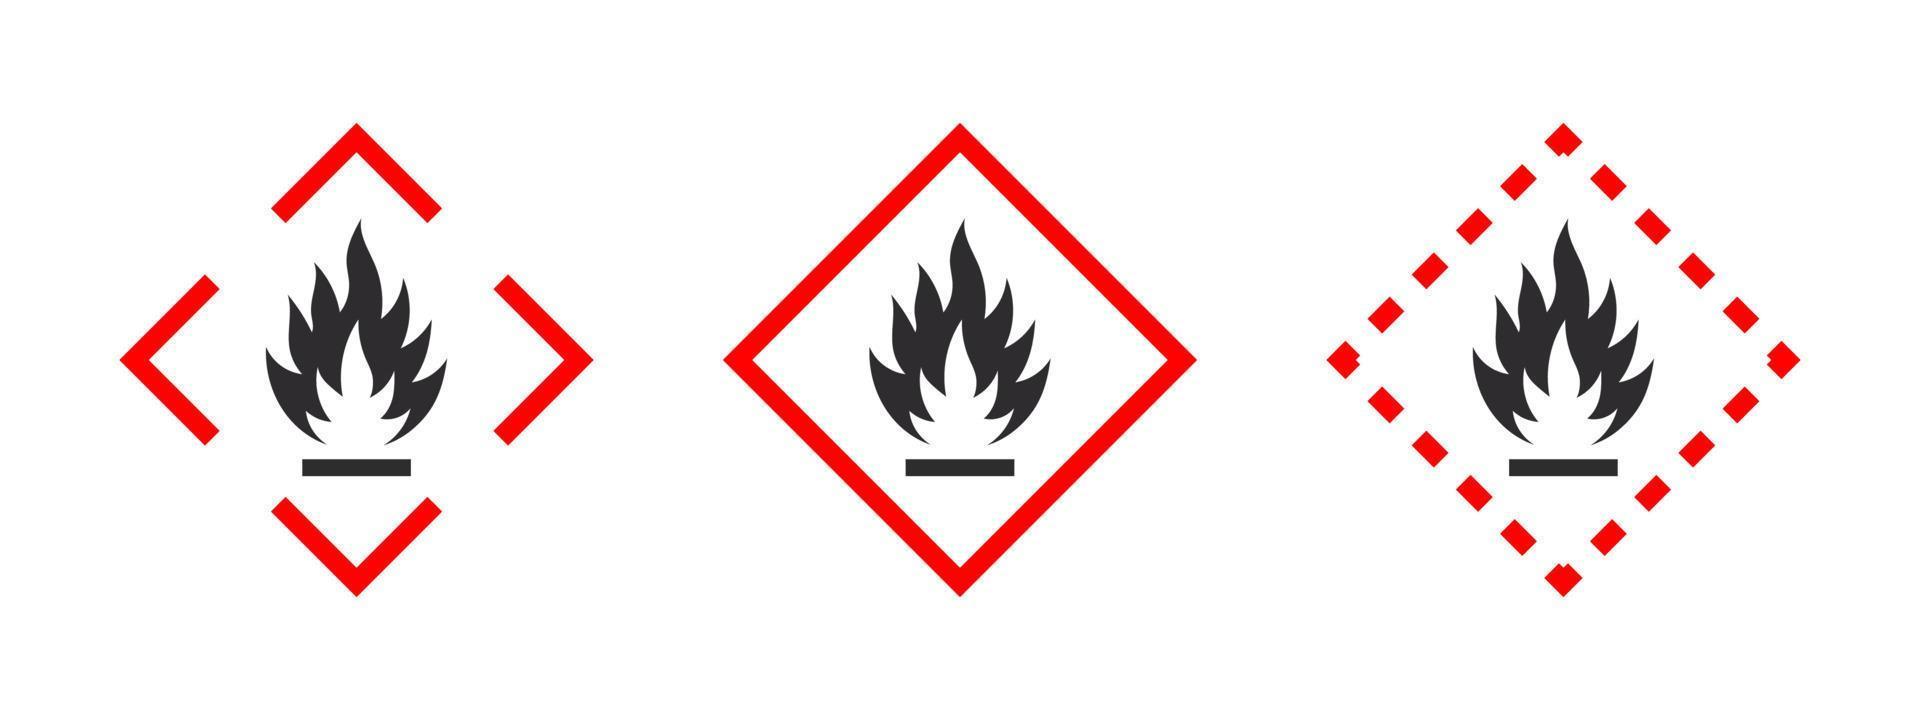 Warnzeichen für brennbare Materialien. Piktogramm für brennbare Stoffe. Symbole für brennbare Substanzen gesetzt. Vektorsymbole vektor